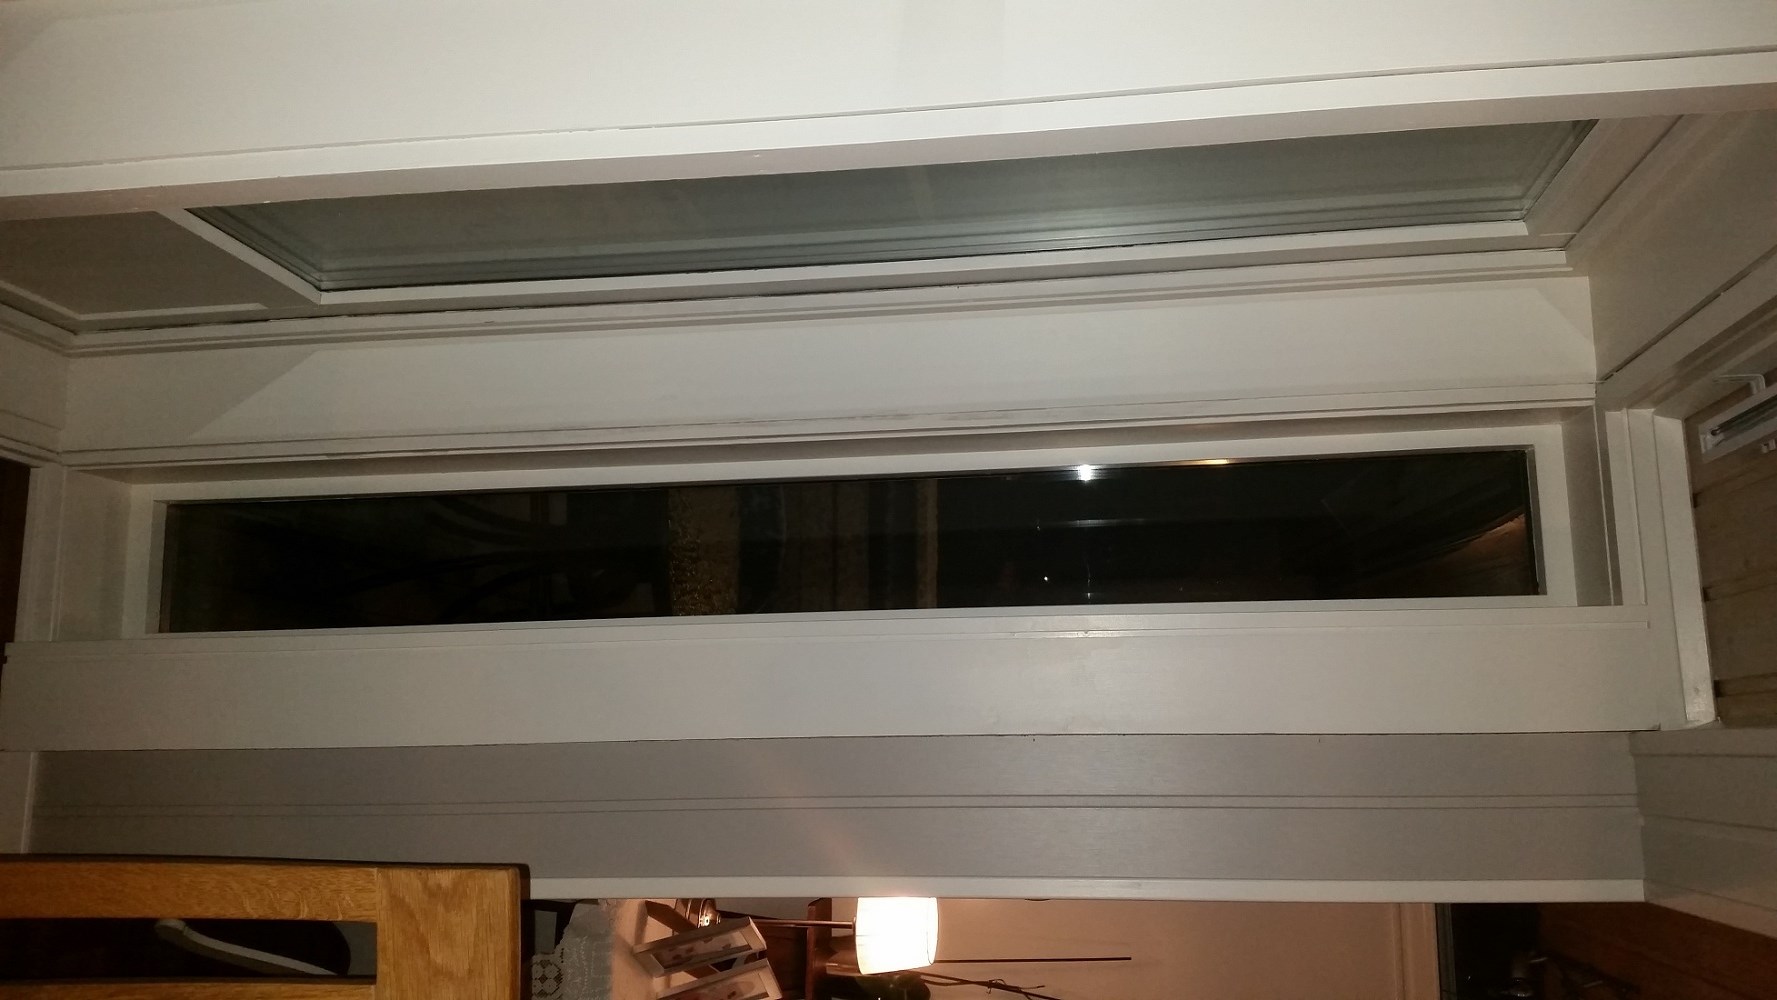 Trekk fra verandadør og vinduer i hus fra 1984 - forslag til forbedring - 2015-01-13 17.03.05.jpg - SteinarAngel